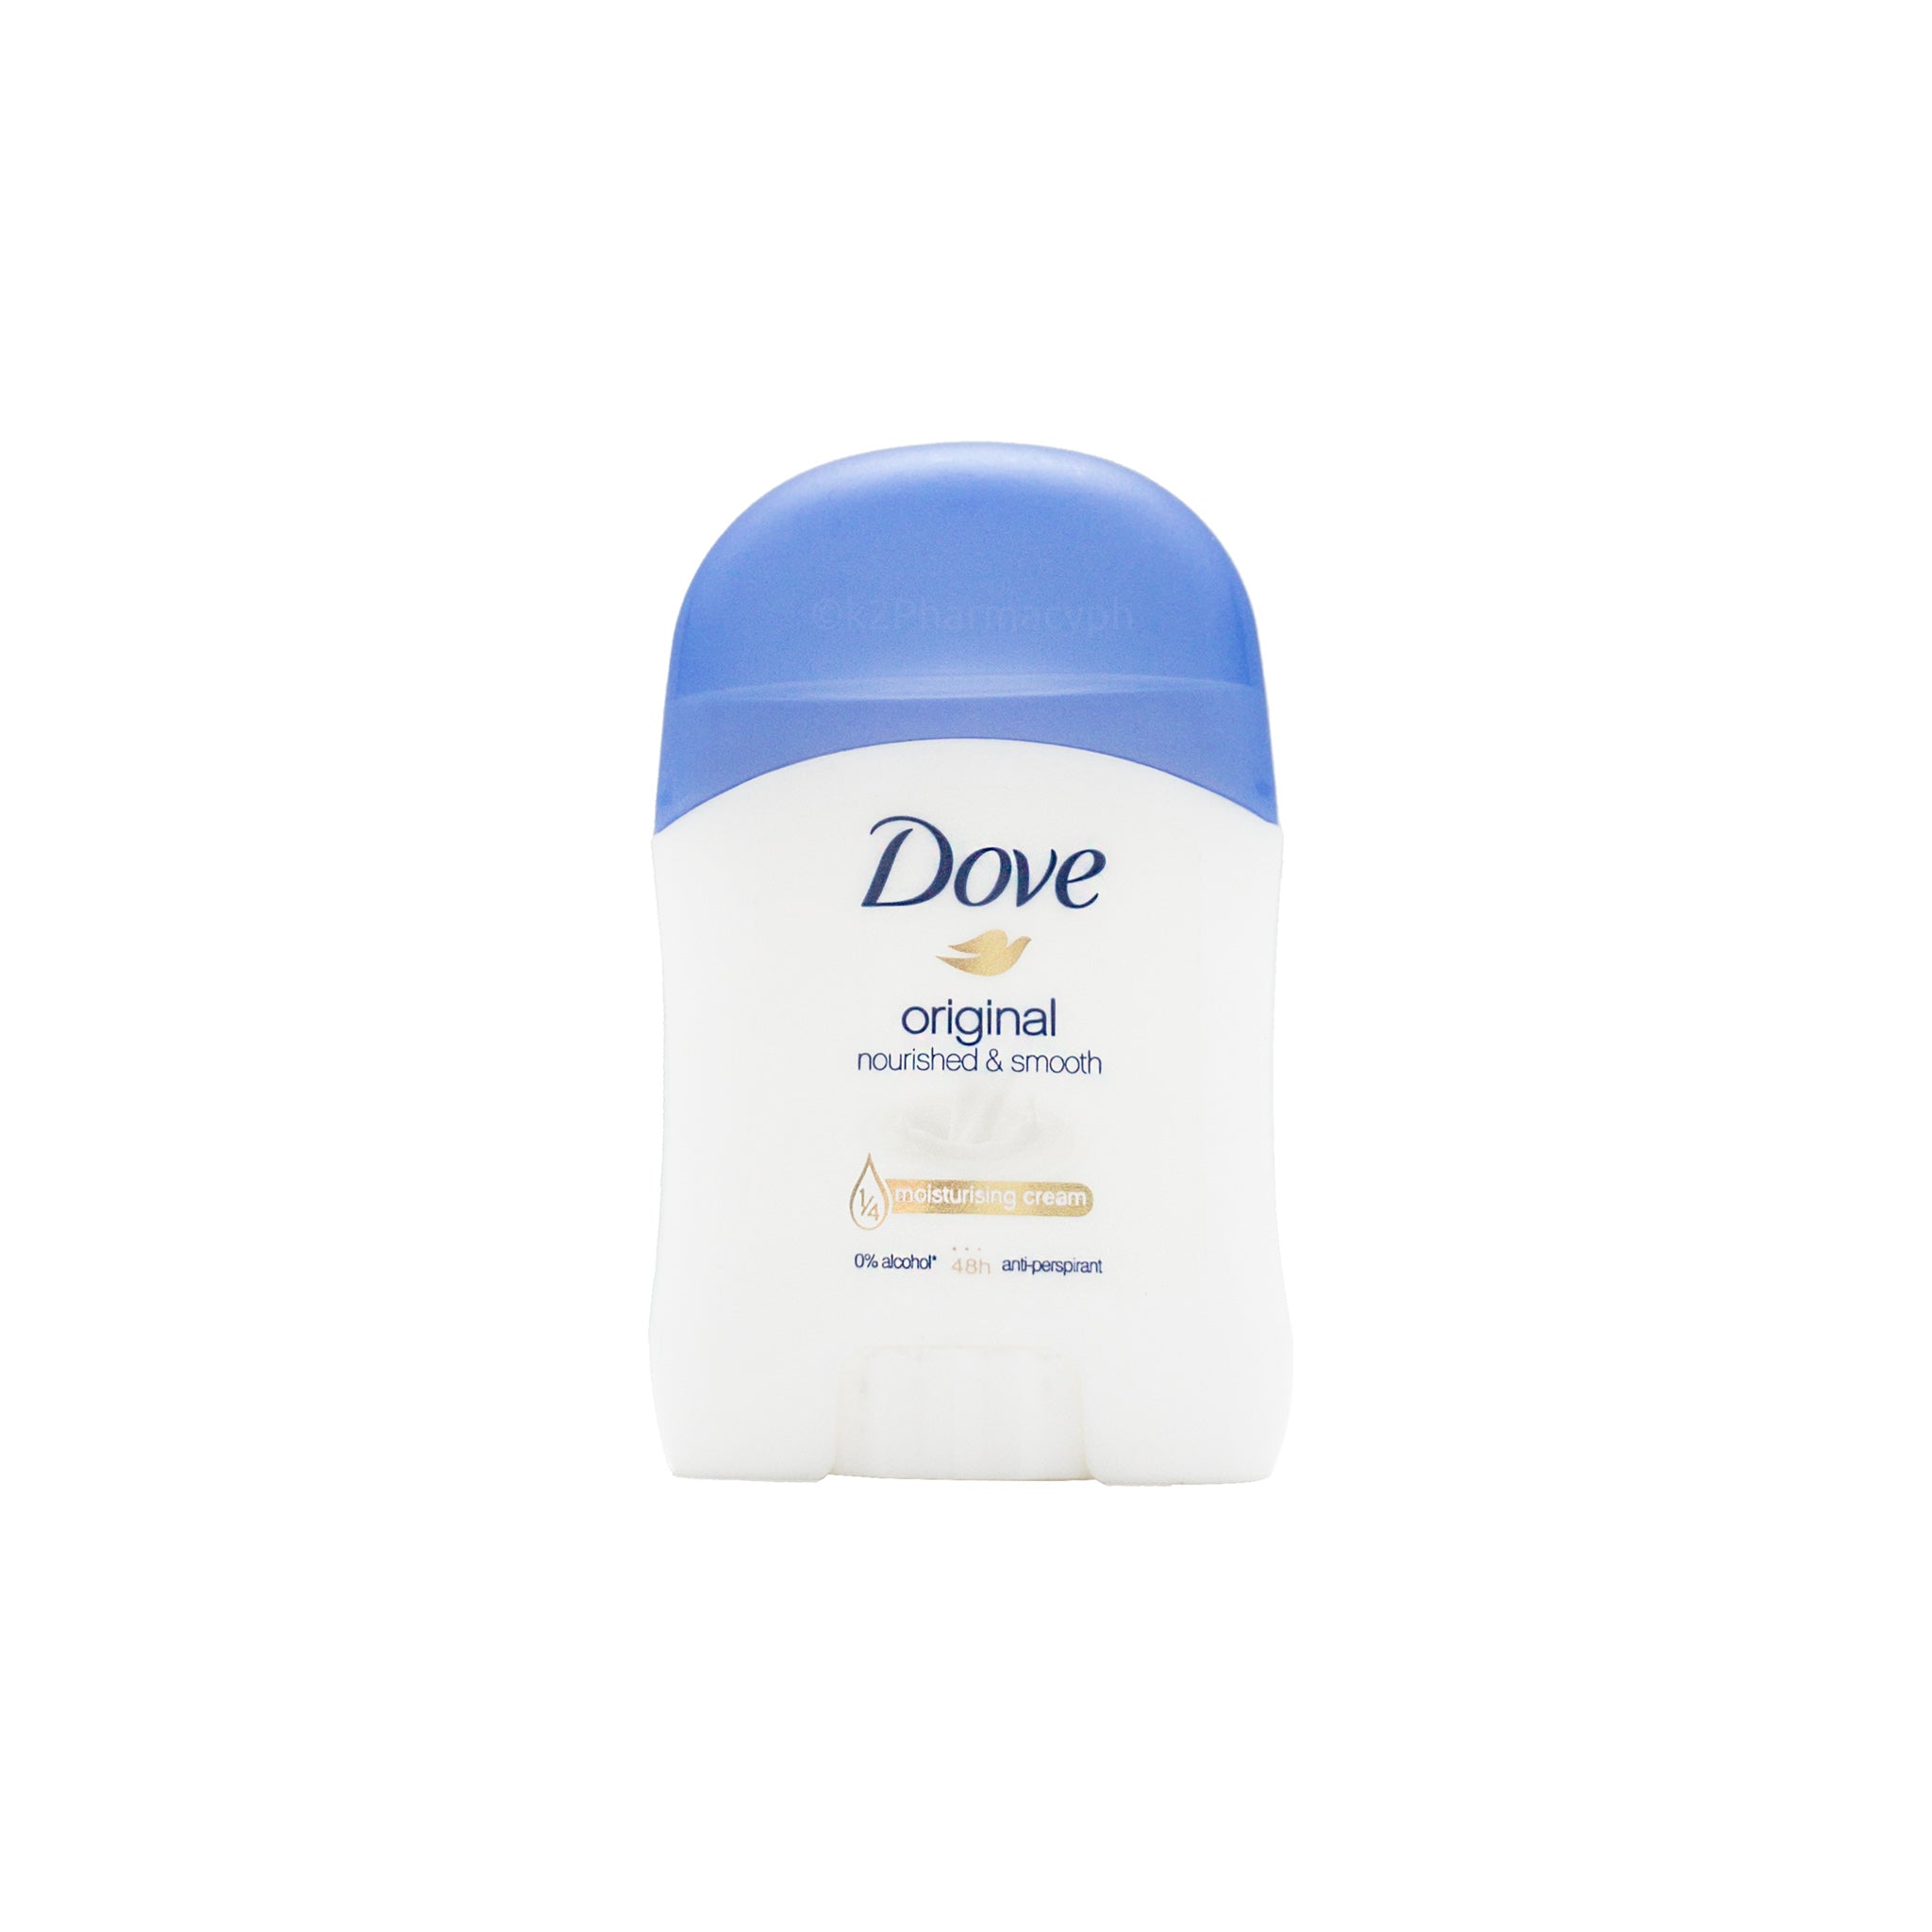 Dove Original Nourished & Smooth Antiperspirant 20g